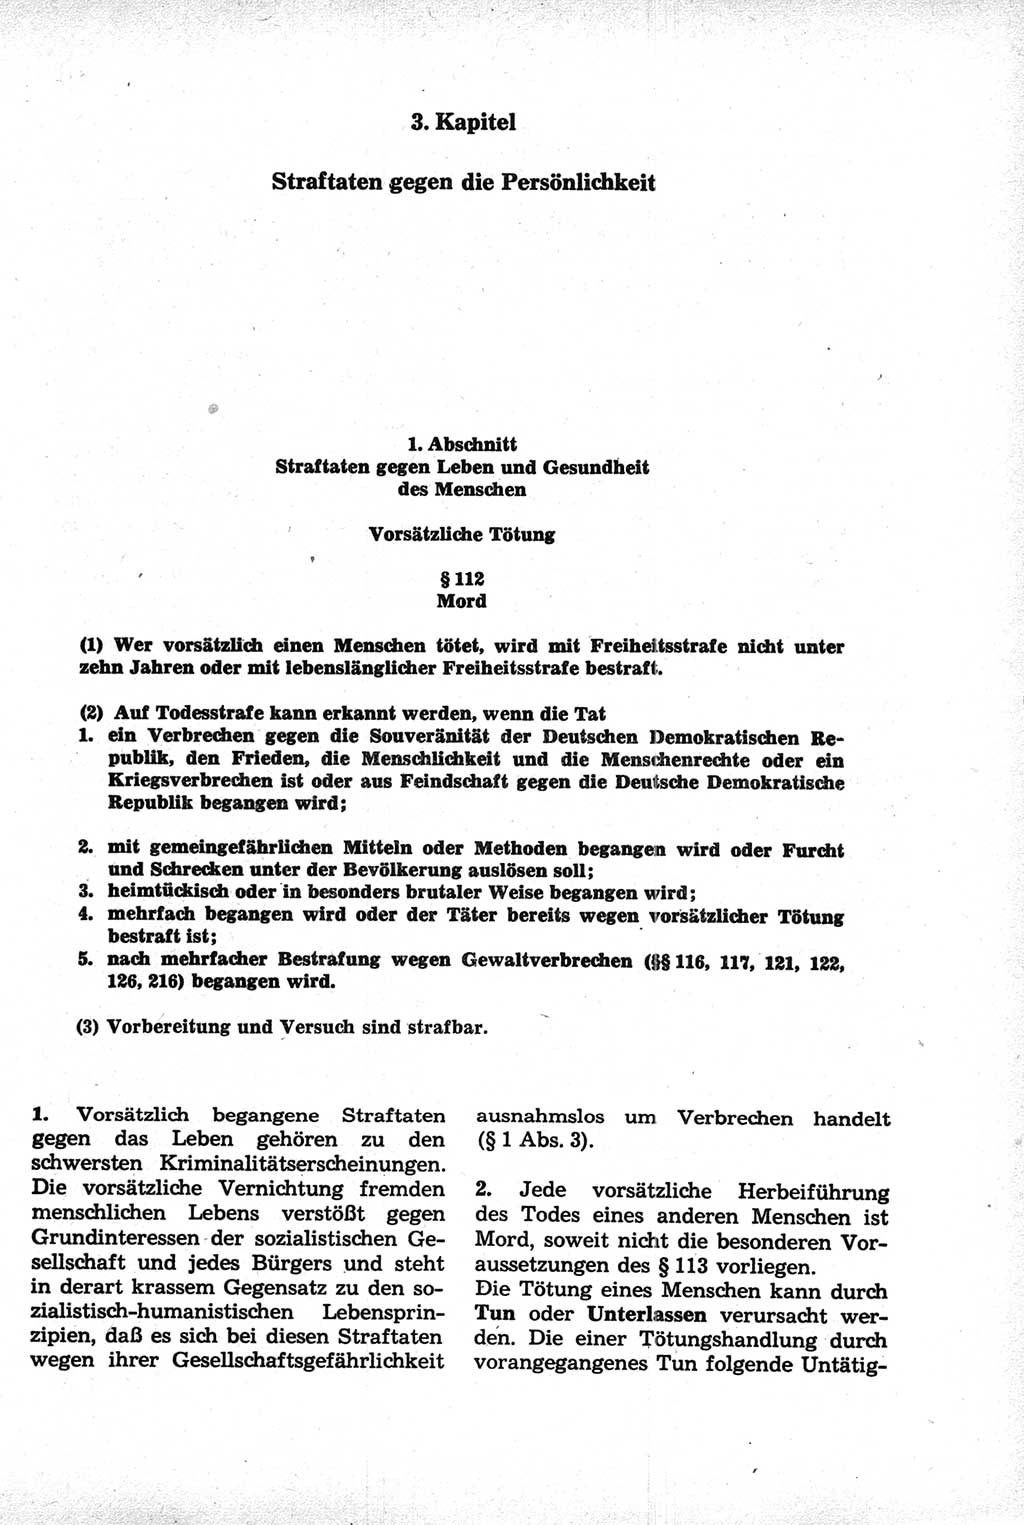 Strafrecht der Deutschen Demokratischen Republik (DDR), Kommentar zum Strafgesetzbuch (StGB) 1981, Seite 311 (Strafr. DDR Komm. StGB 1981, S. 311)